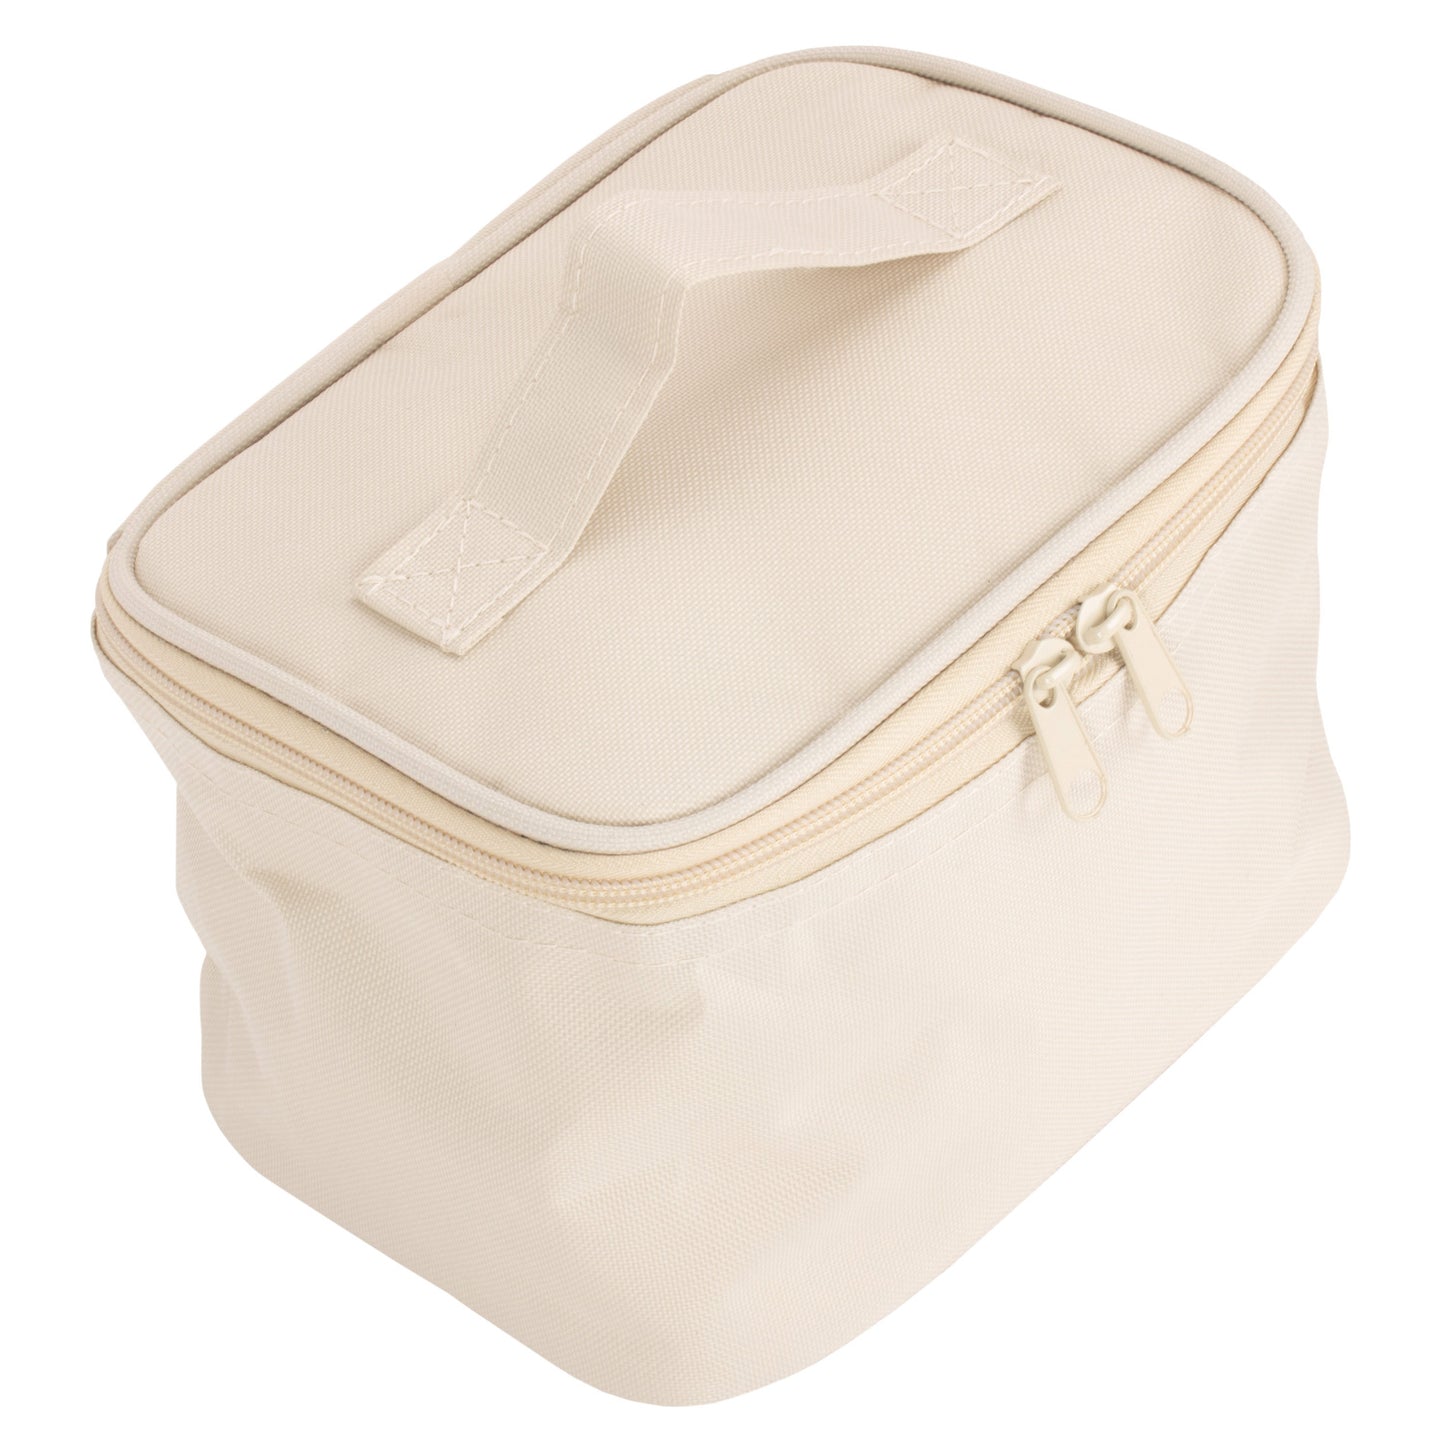 Cream Cooler Bag